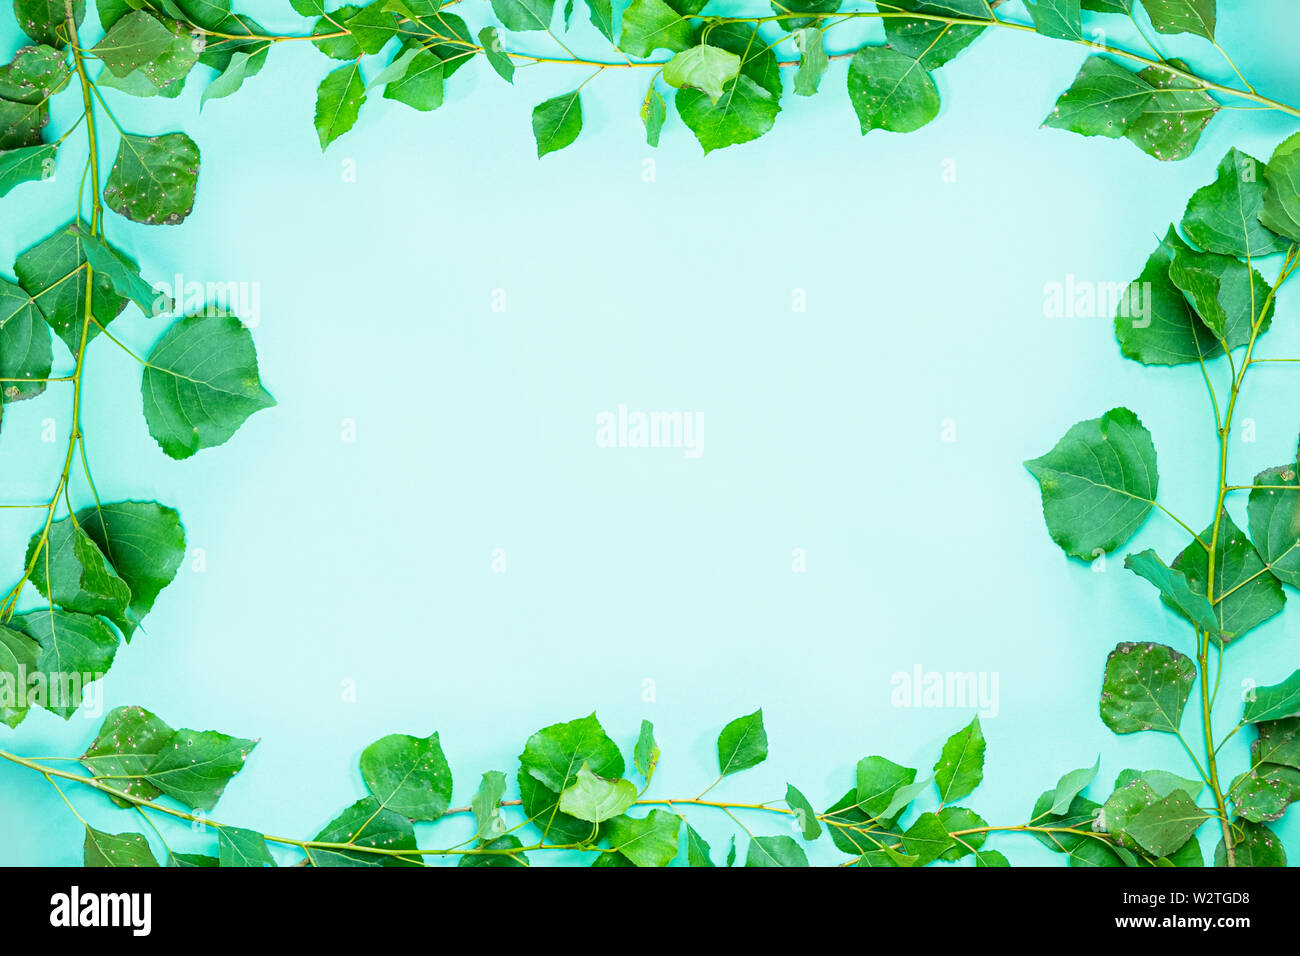 Cadre vert composé de popplar brances vert frais et de feuilles. Contexte et copie espace libre symbolisant l'écologie, la nature, le printemps et la fraîcheur Banque D'Images